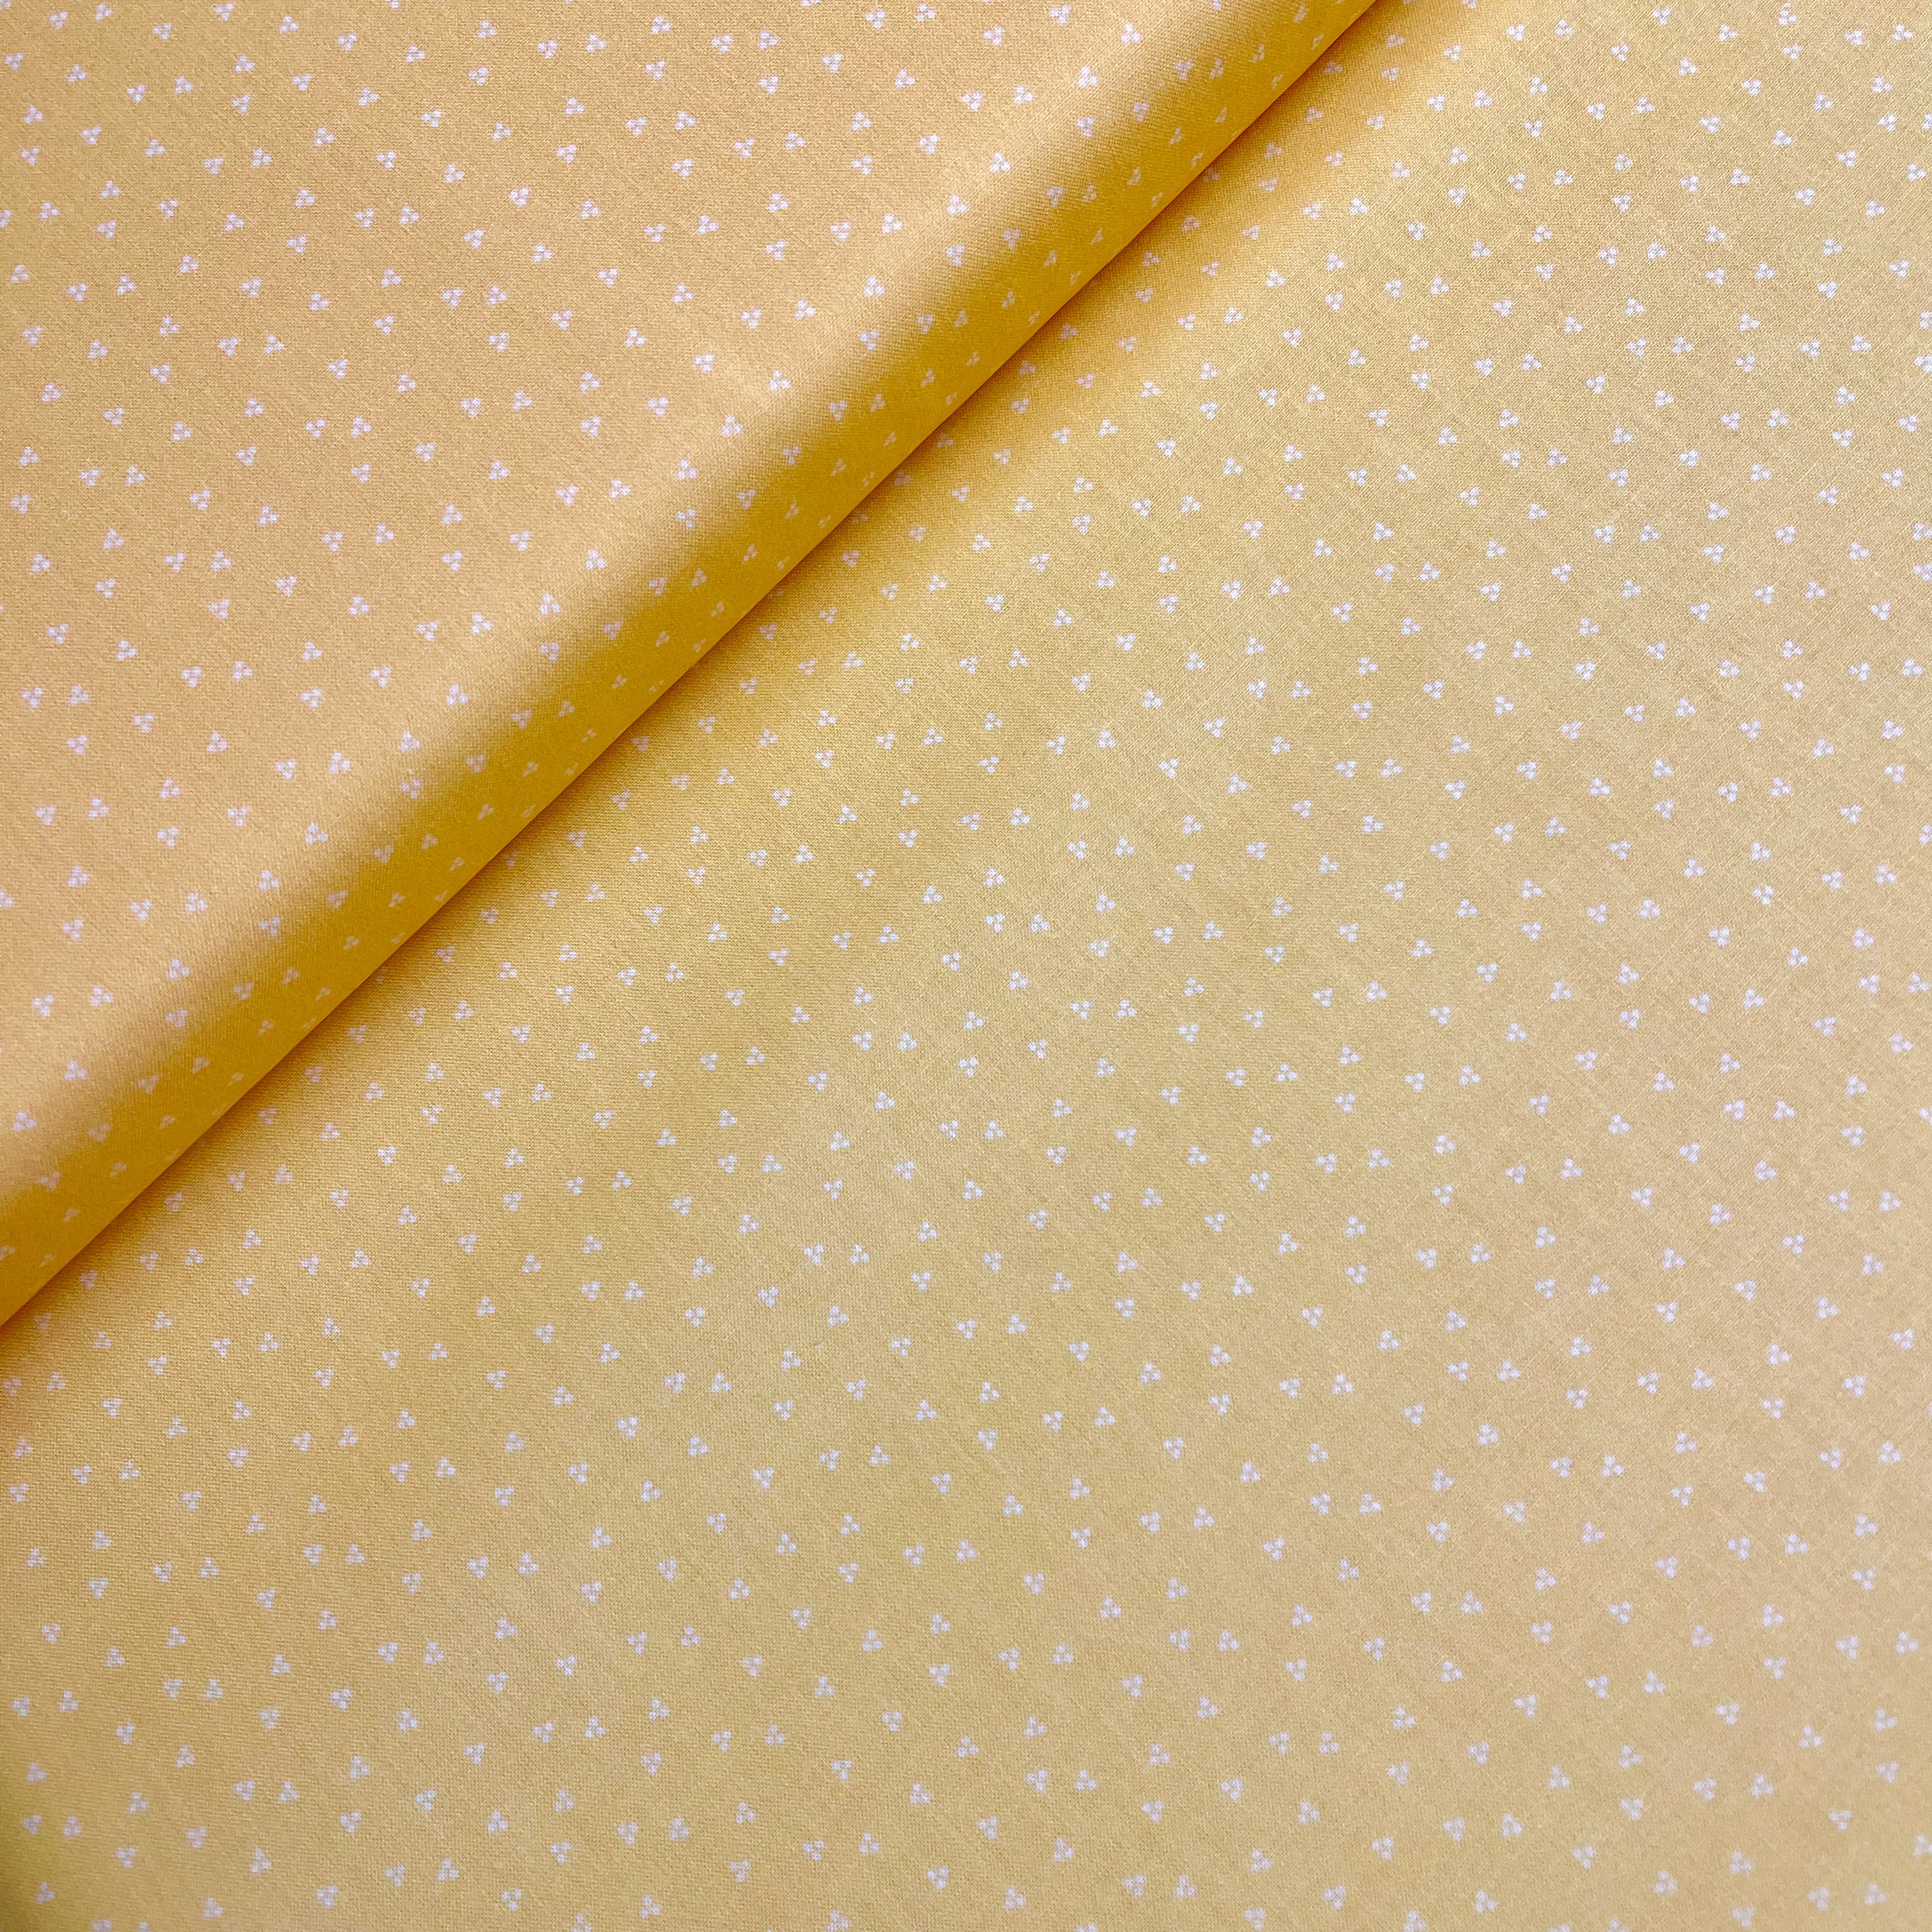 Trachten Baumwolle Serie Anke Coord Punkteblümchen Gelb